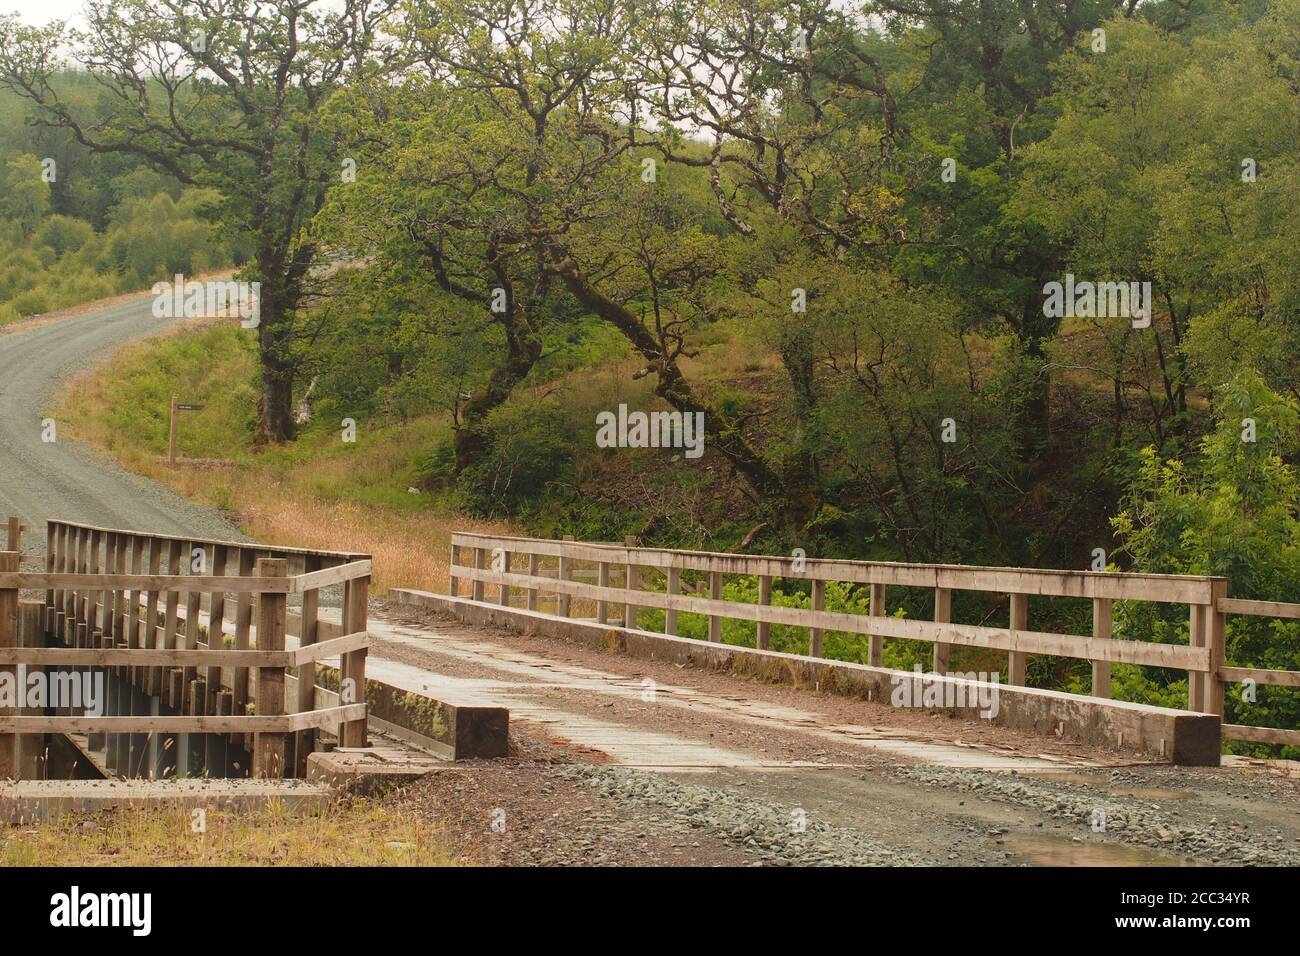 Vue sur un pont au-dessus d'une rivière conçue pour les véhicules de transport forestier dans la plantation et la récolte des forêts à feuilles persistantes à Argyll, en Écosse Banque D'Images